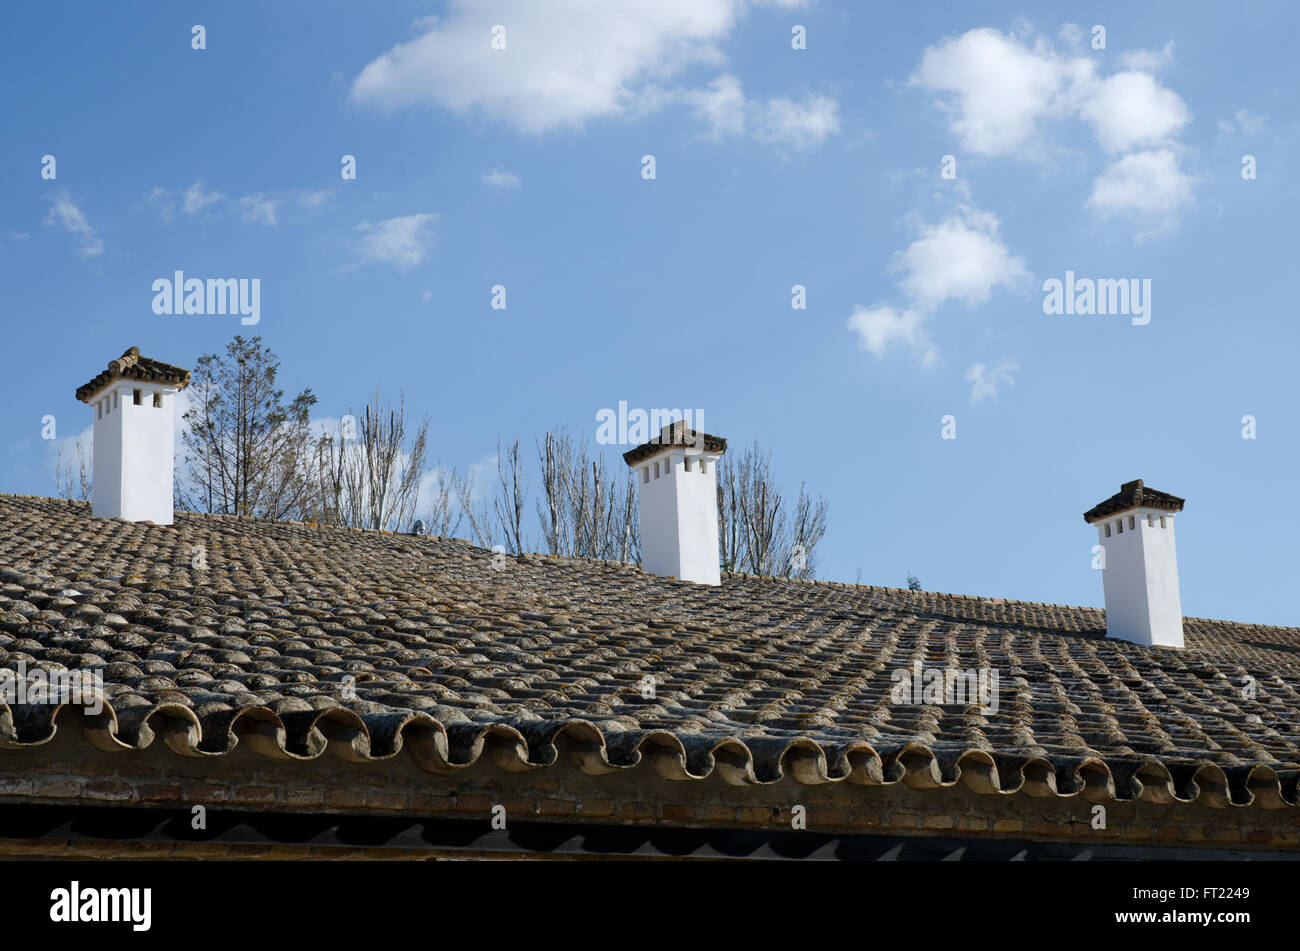 Un toit de style andalou typique et cheminées, dans le sud de l'Espagne Banque D'Images